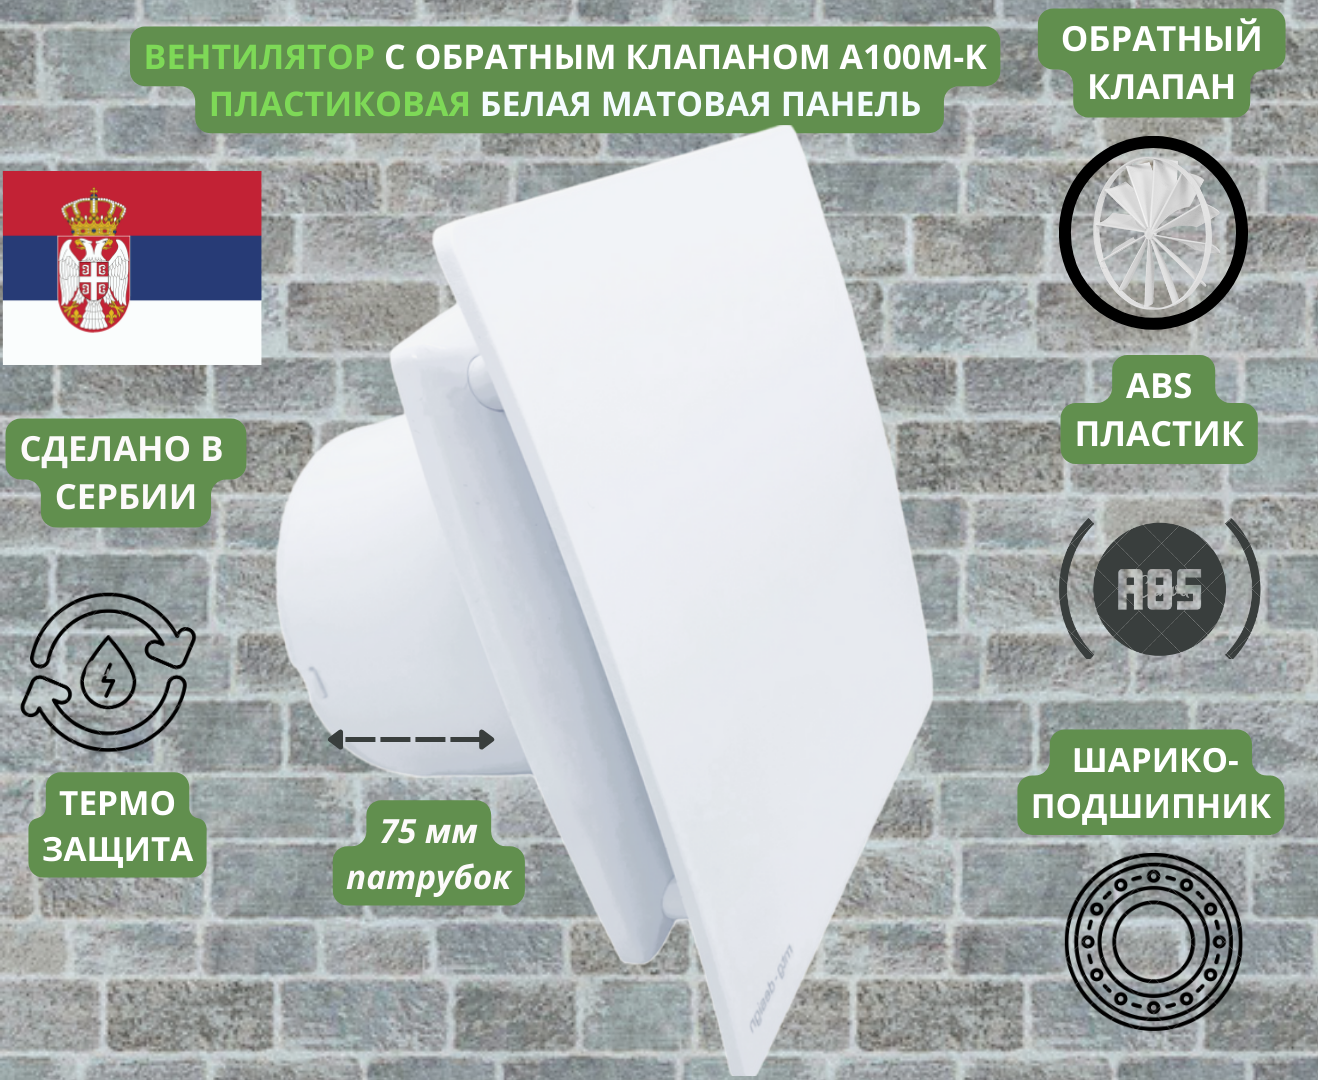 Вентилятор D100мм с матовой белой панелью и с обратным клапаном EXTRA A100М-K Сербия